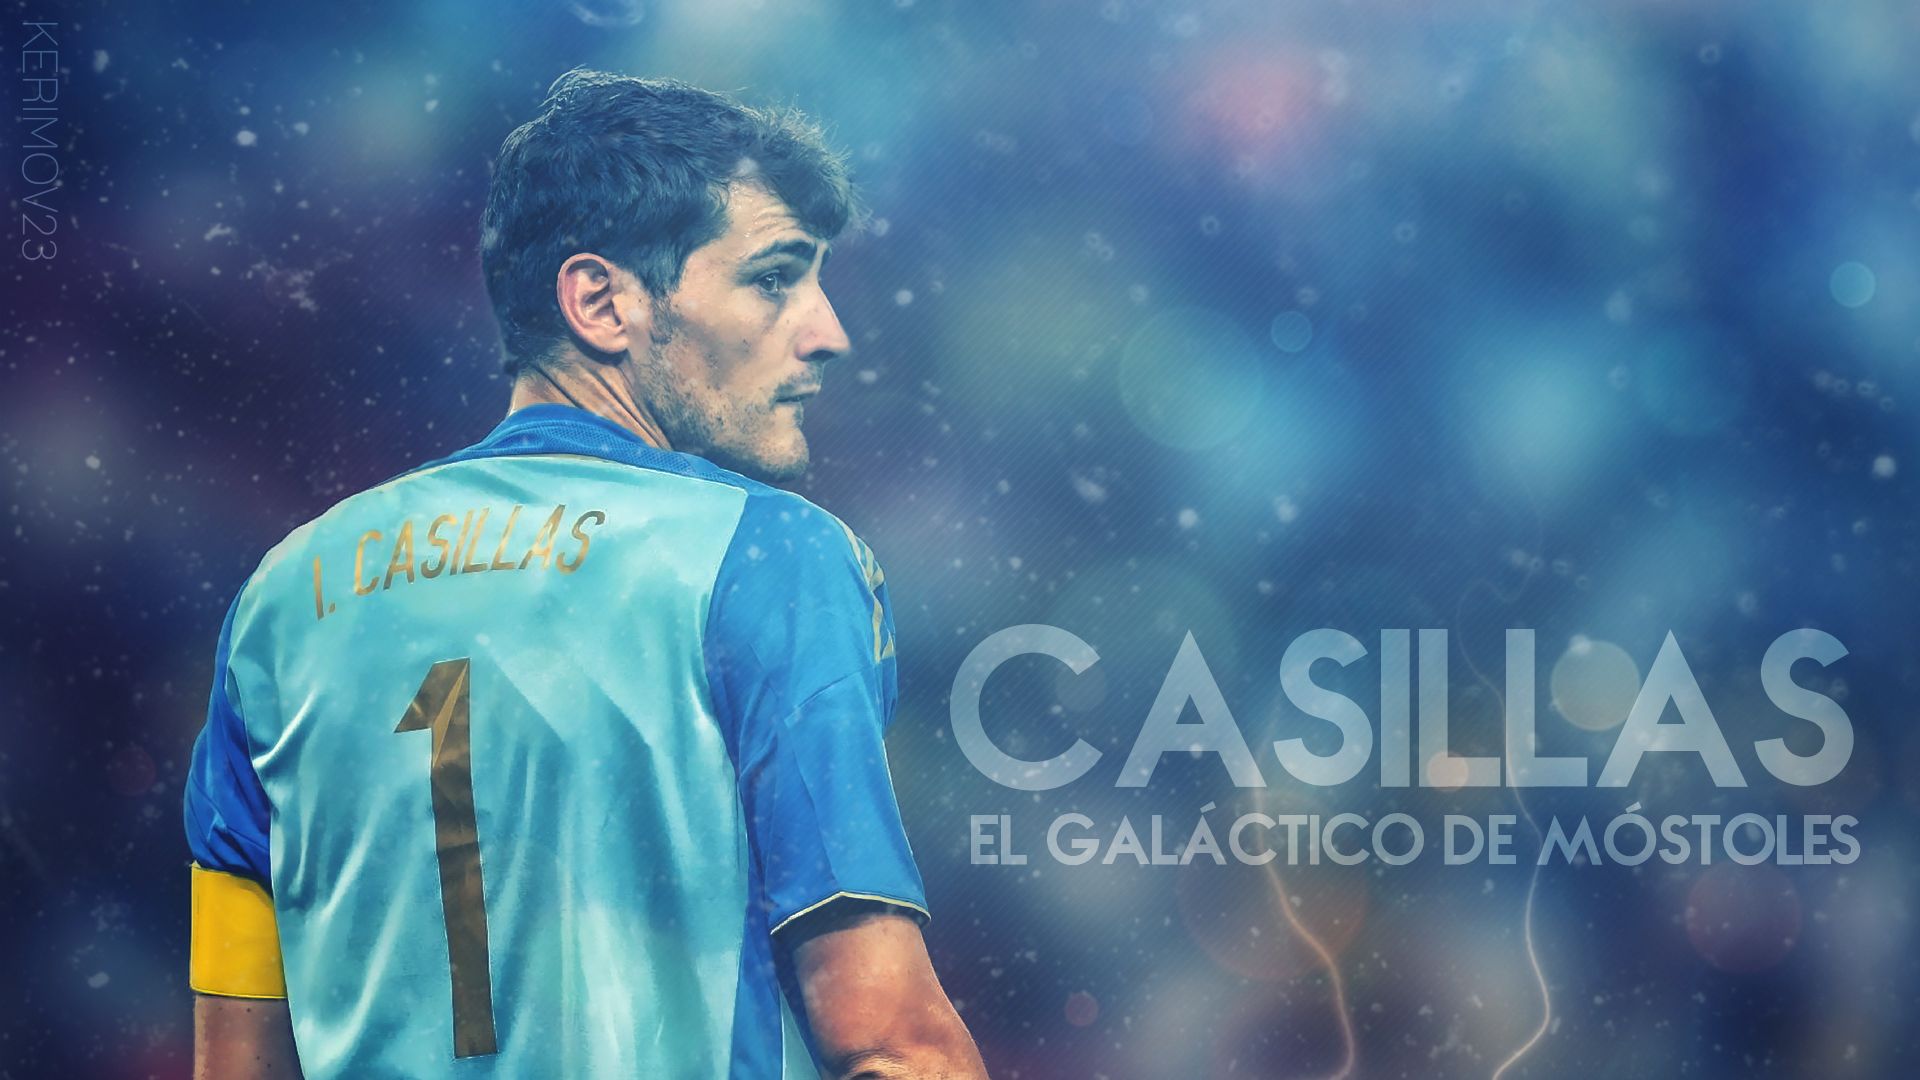 Free download Iker Casillas HD Wallpaper [1920x1080]